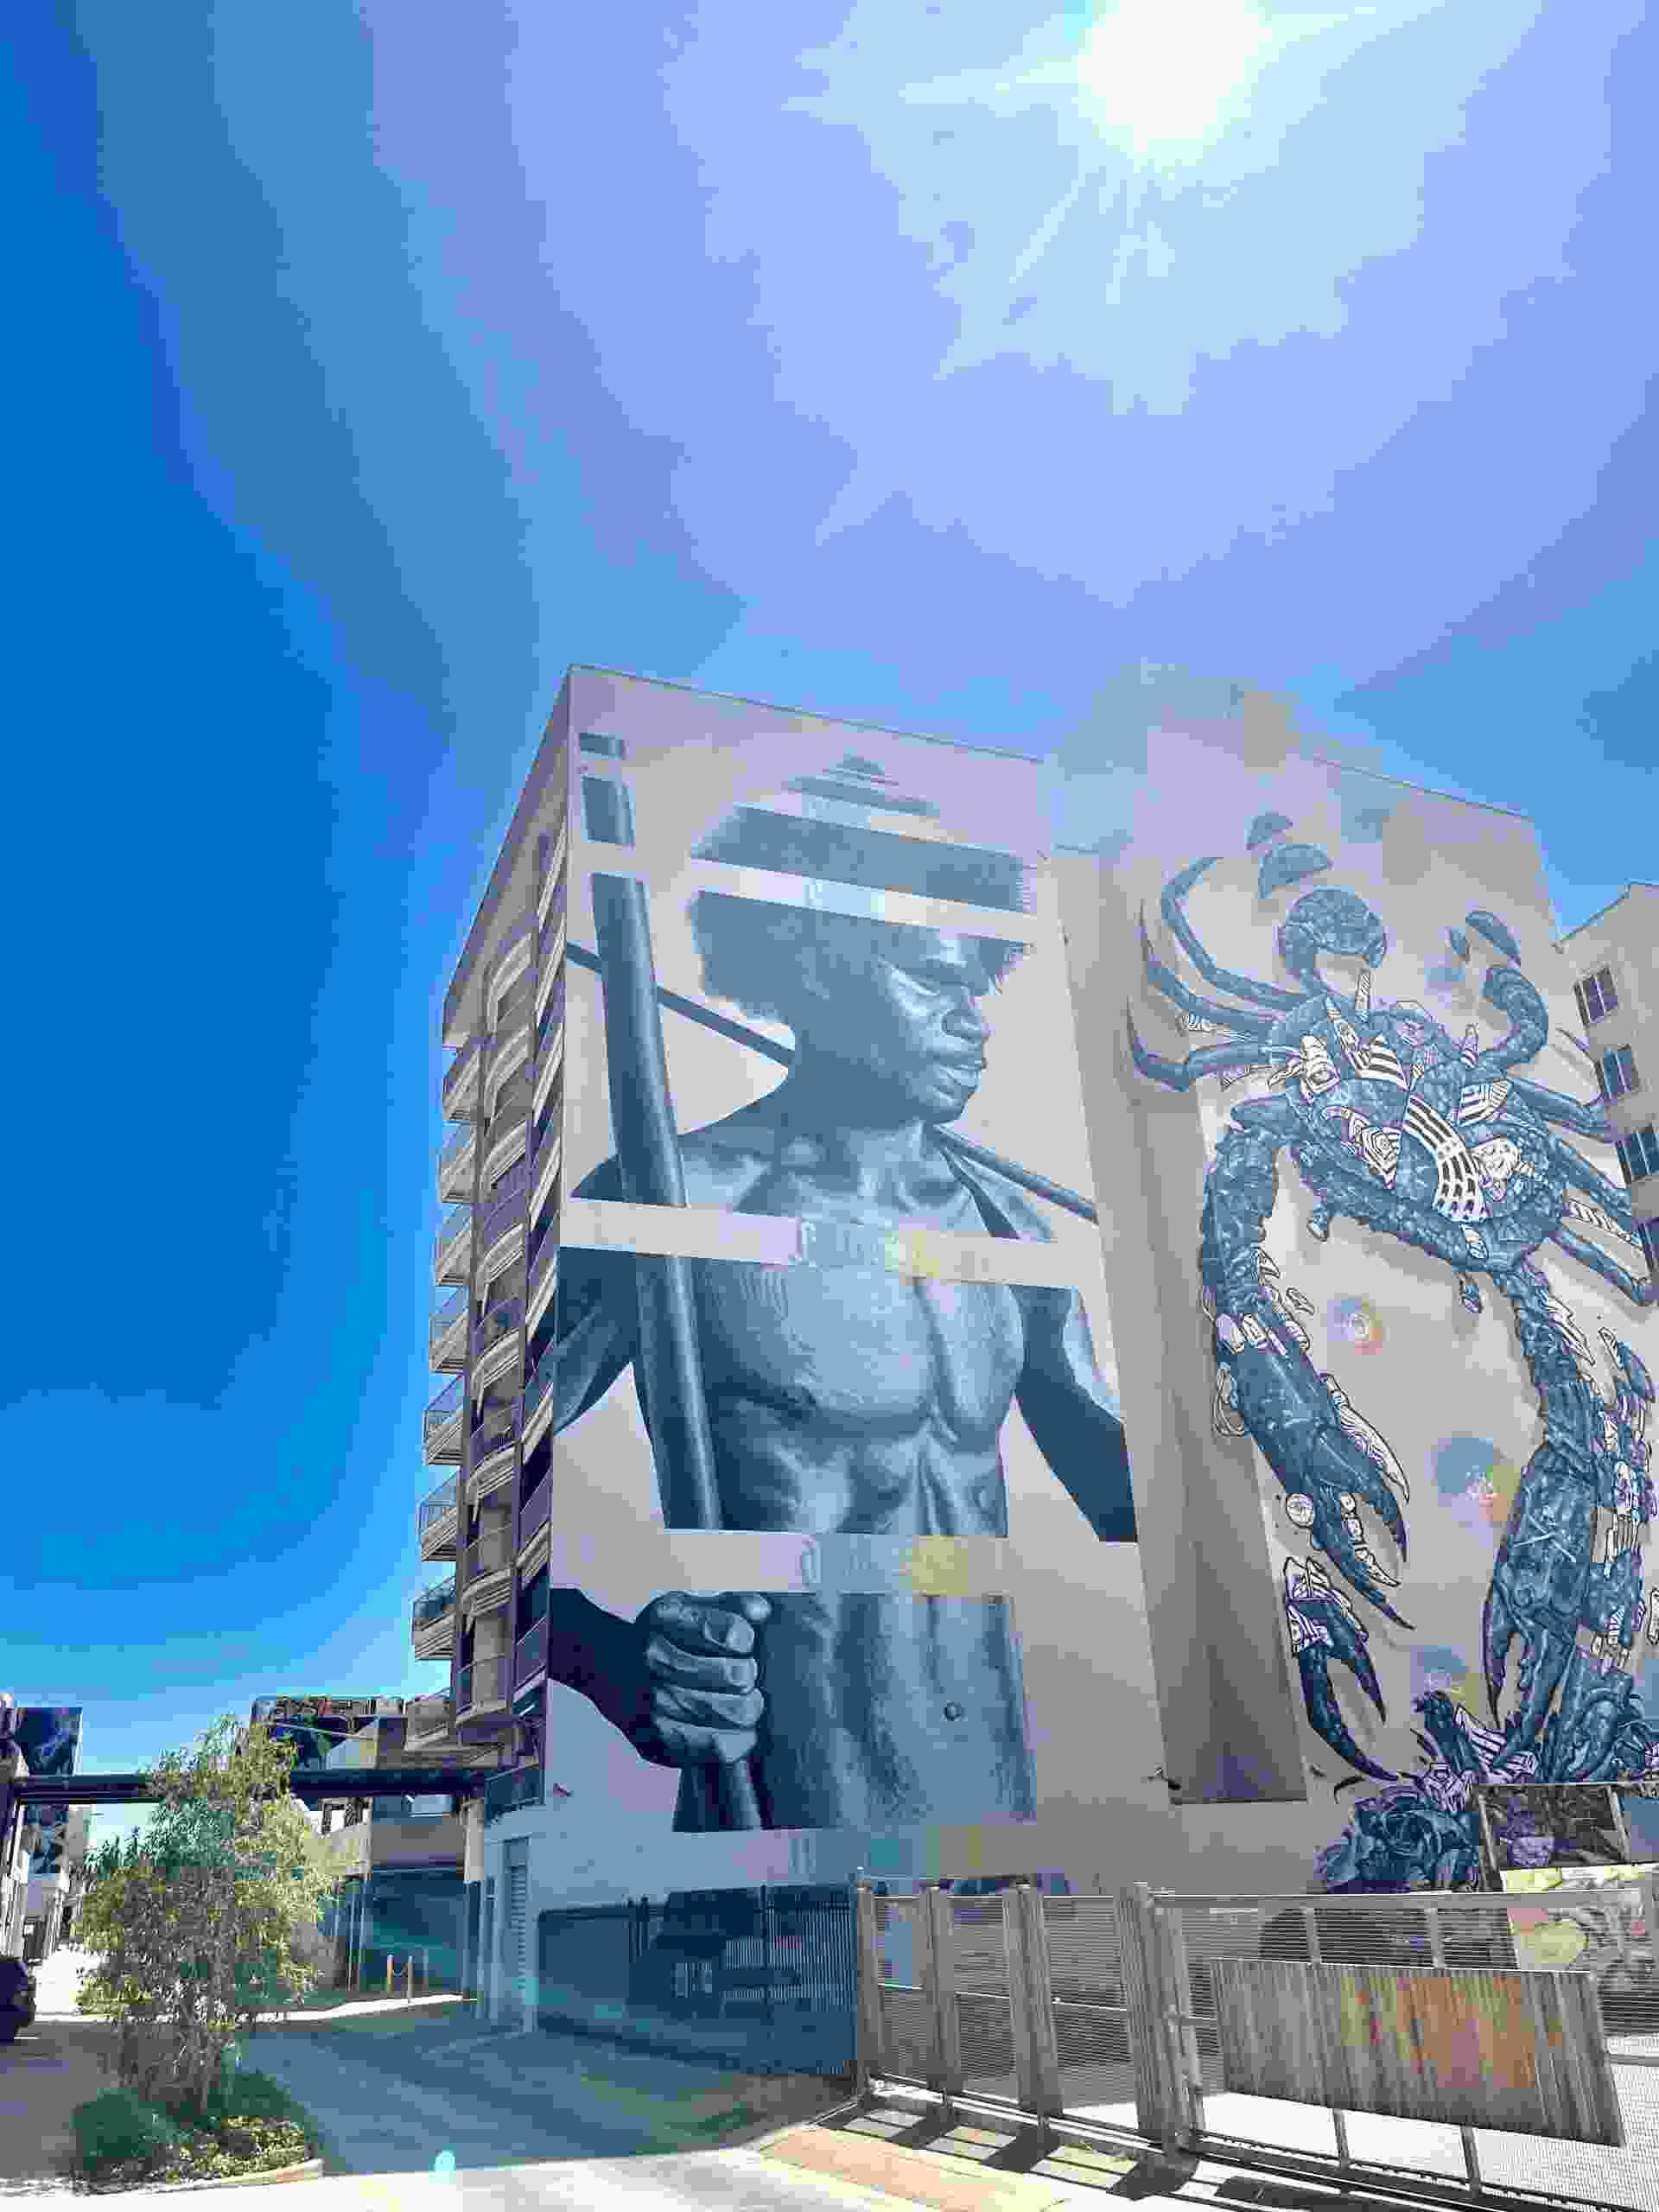 En cremefarvet blokbygning med en forstørret First Nations-mand graffiteret på væggen